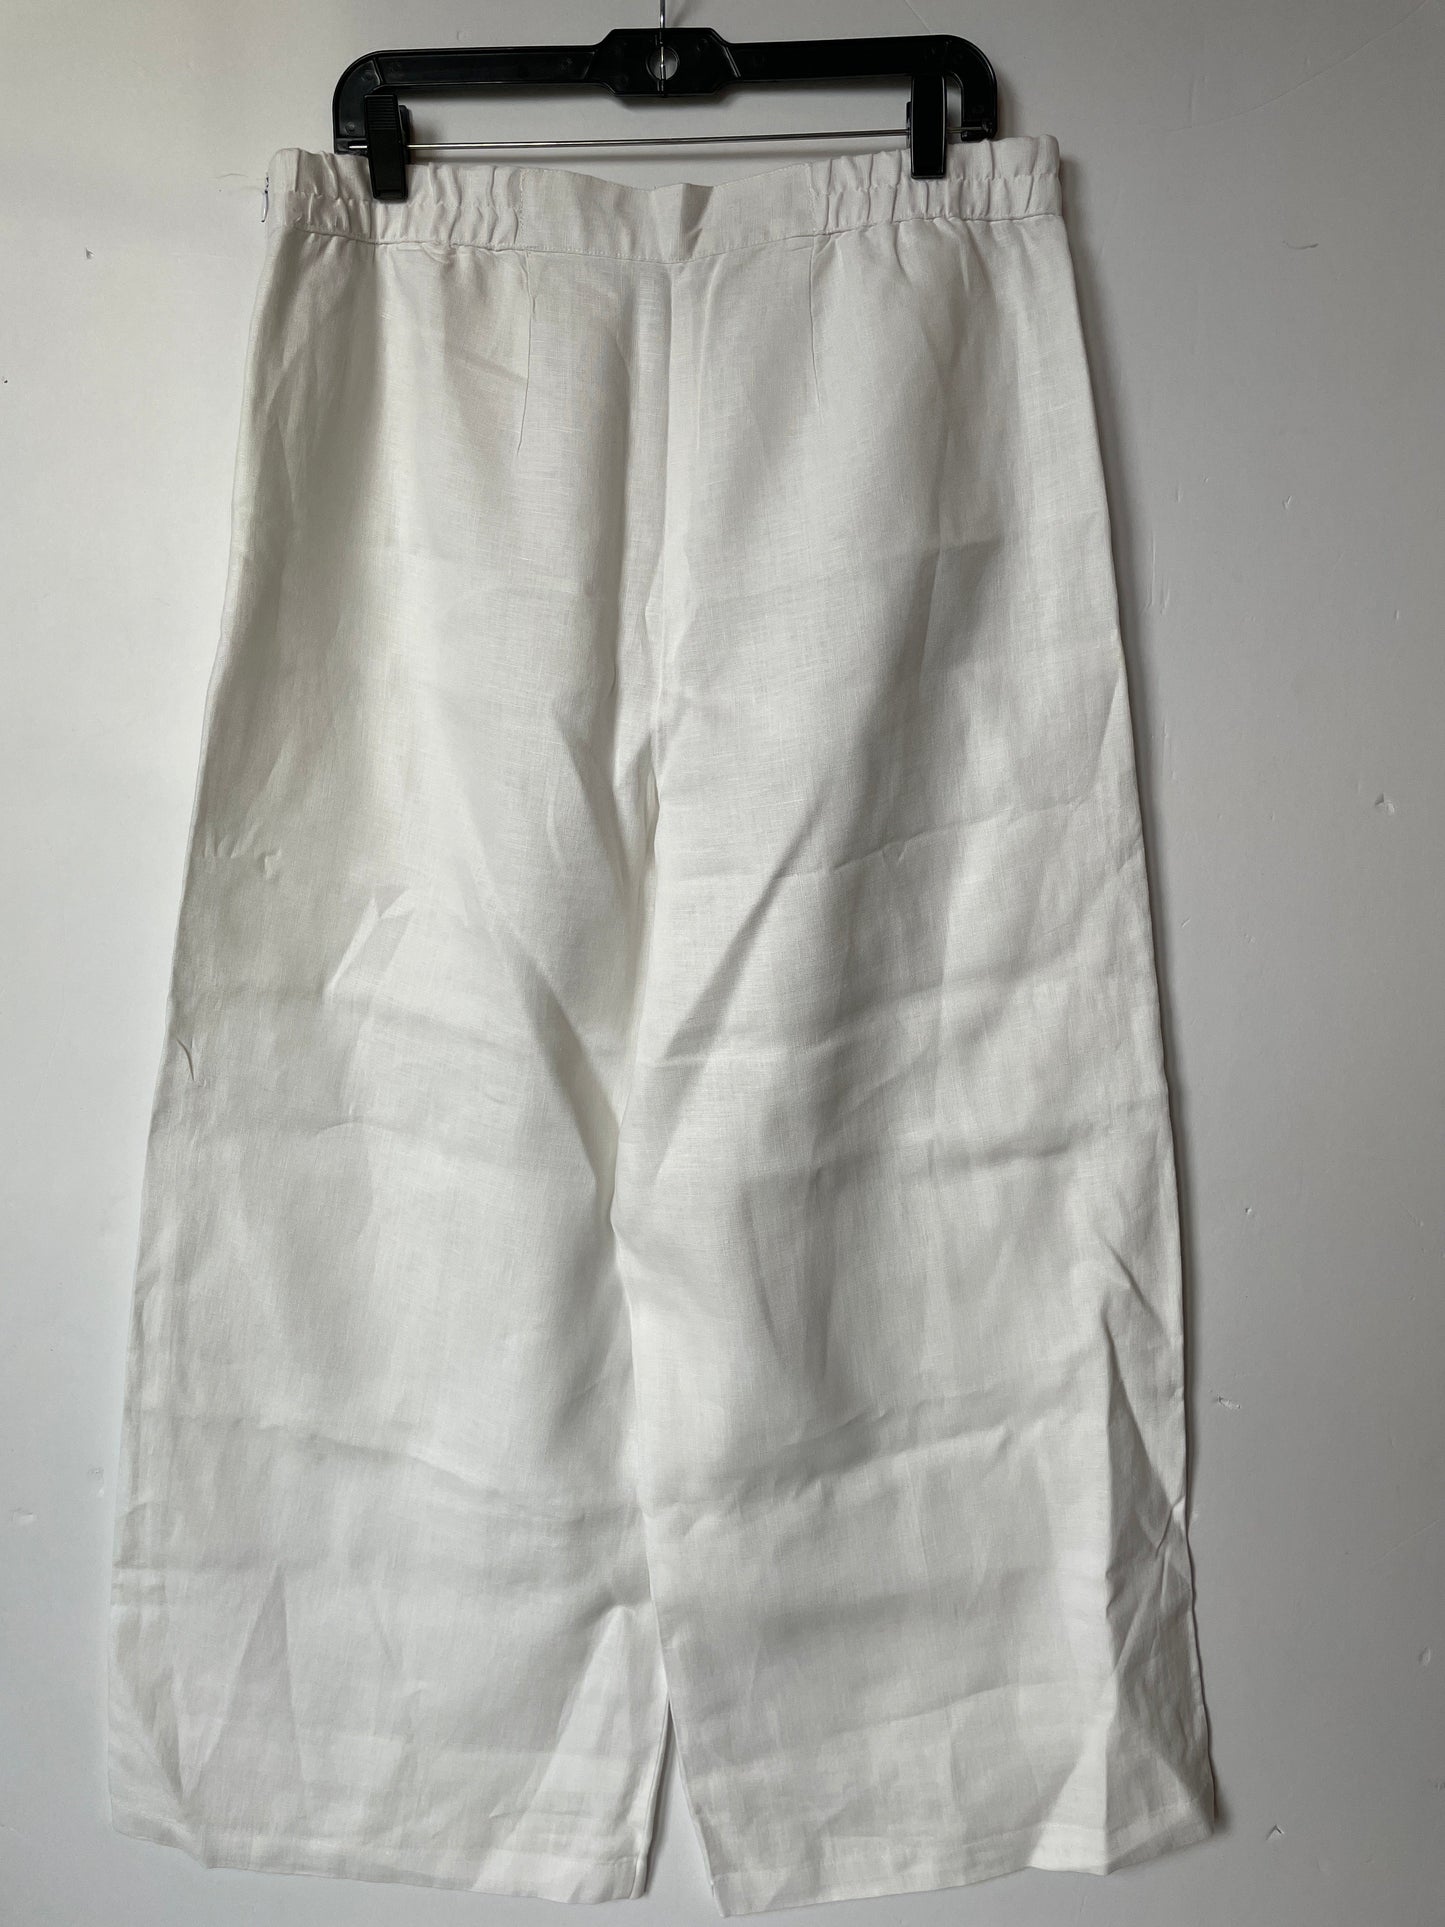 White Pants Linen For Cynthia, Size 12